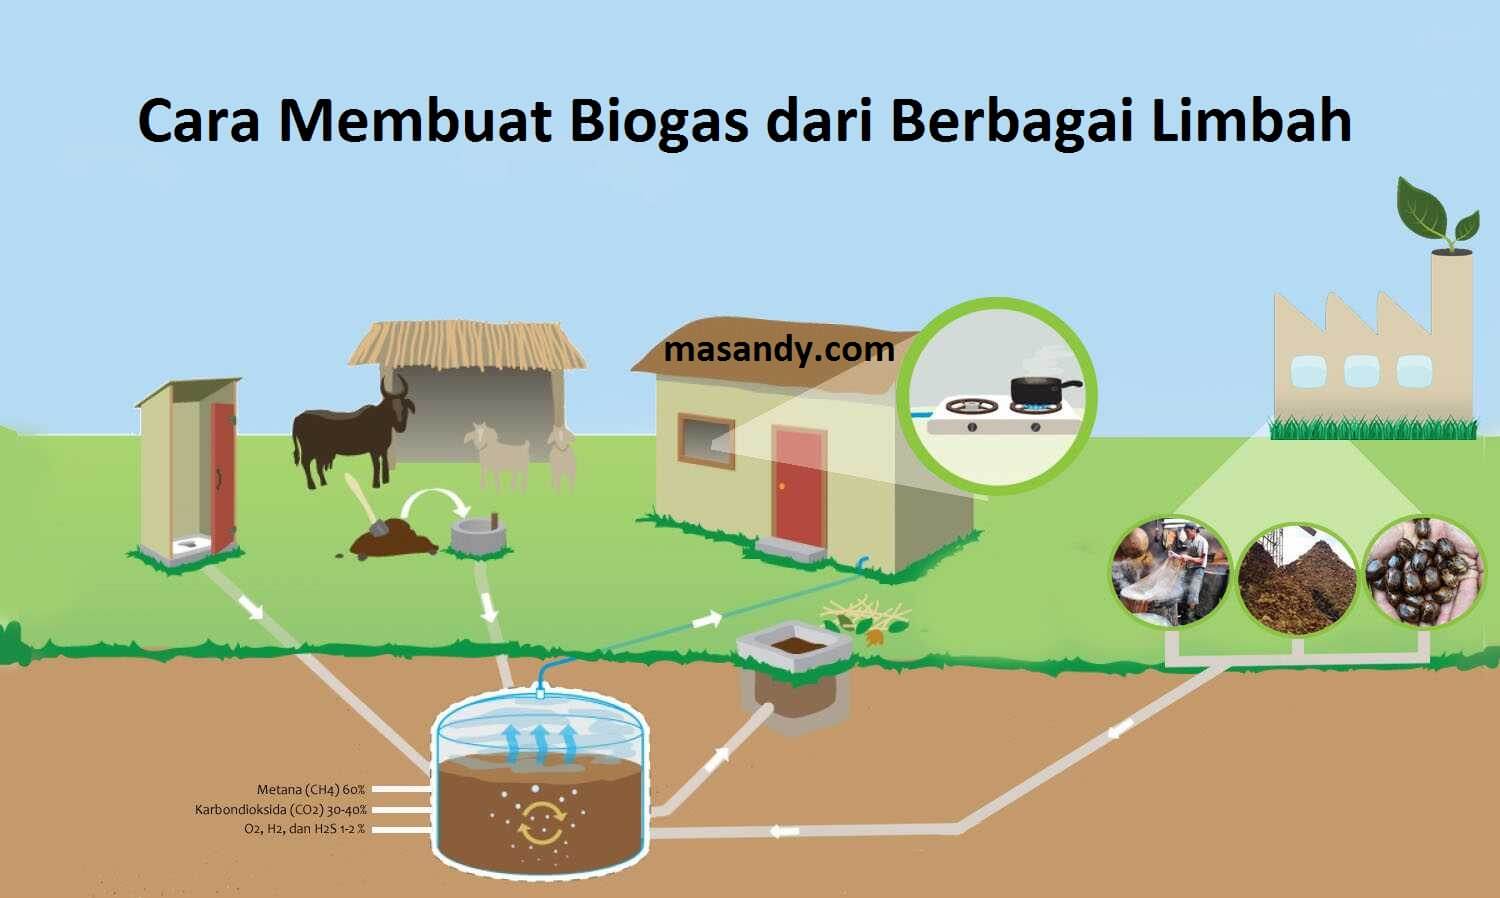 Proses pembuatan biogas dari limbah